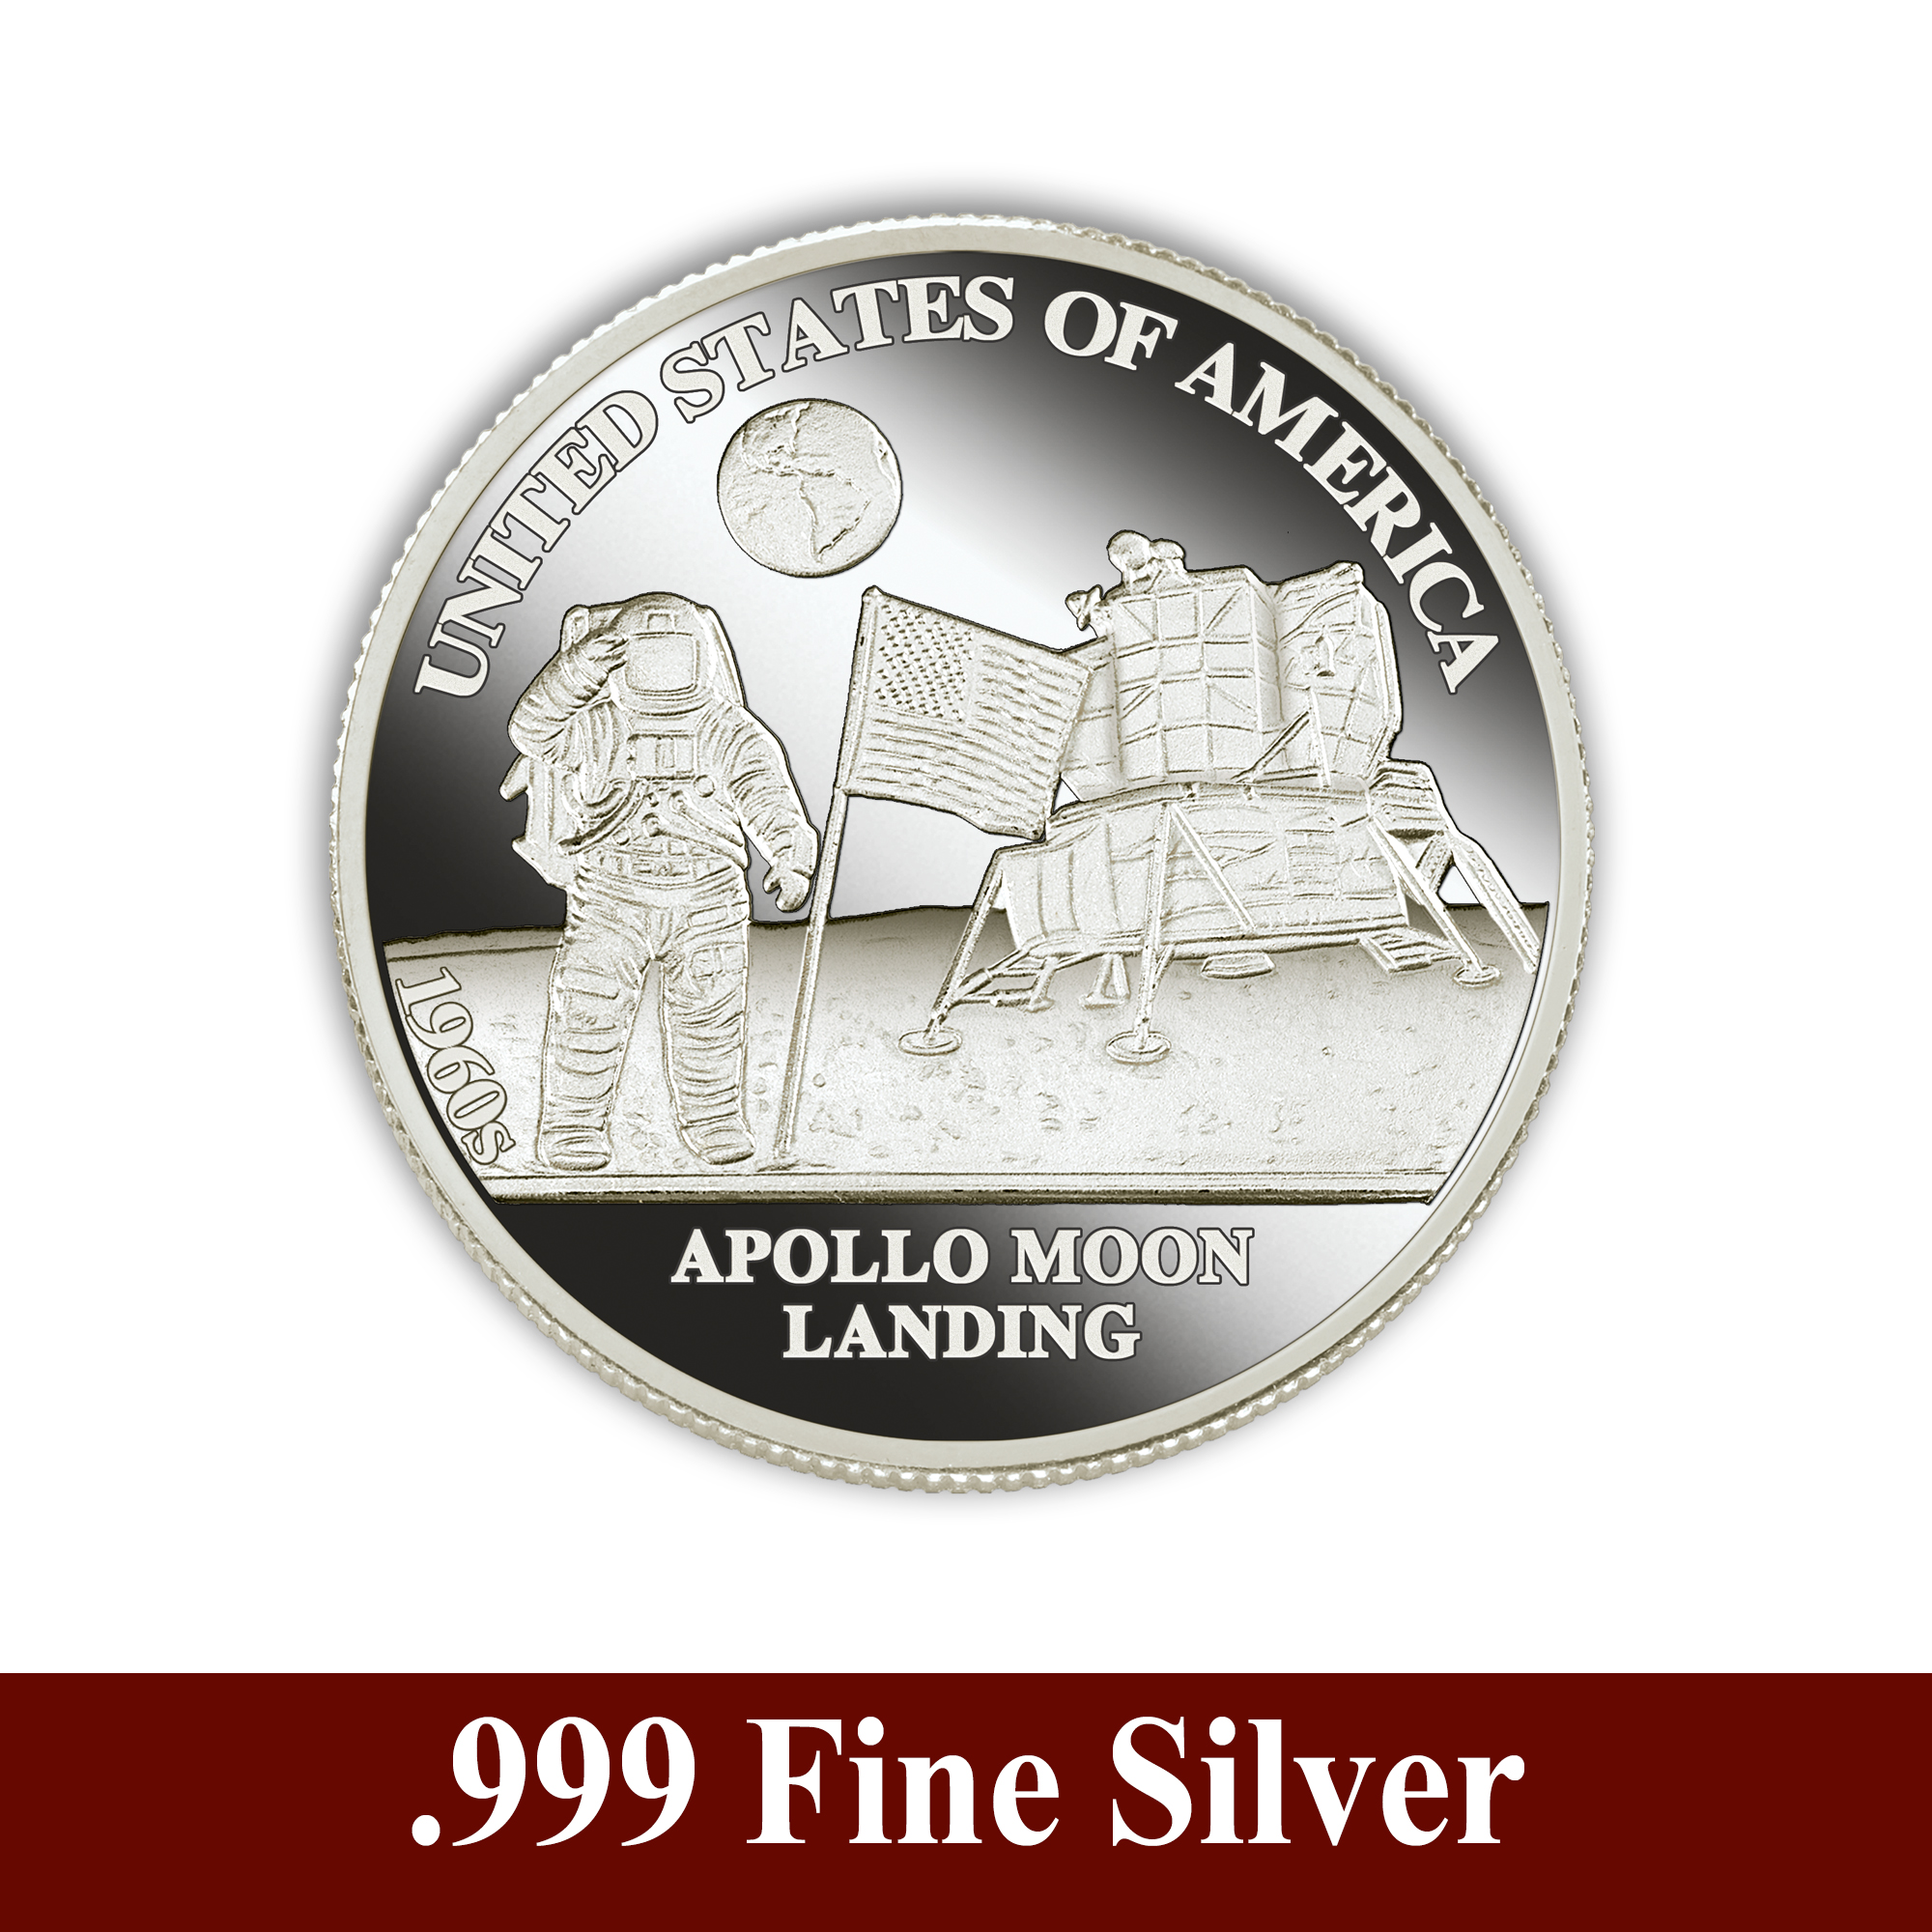 American History Silver Bullion Collection 5541 0161 b commemorative